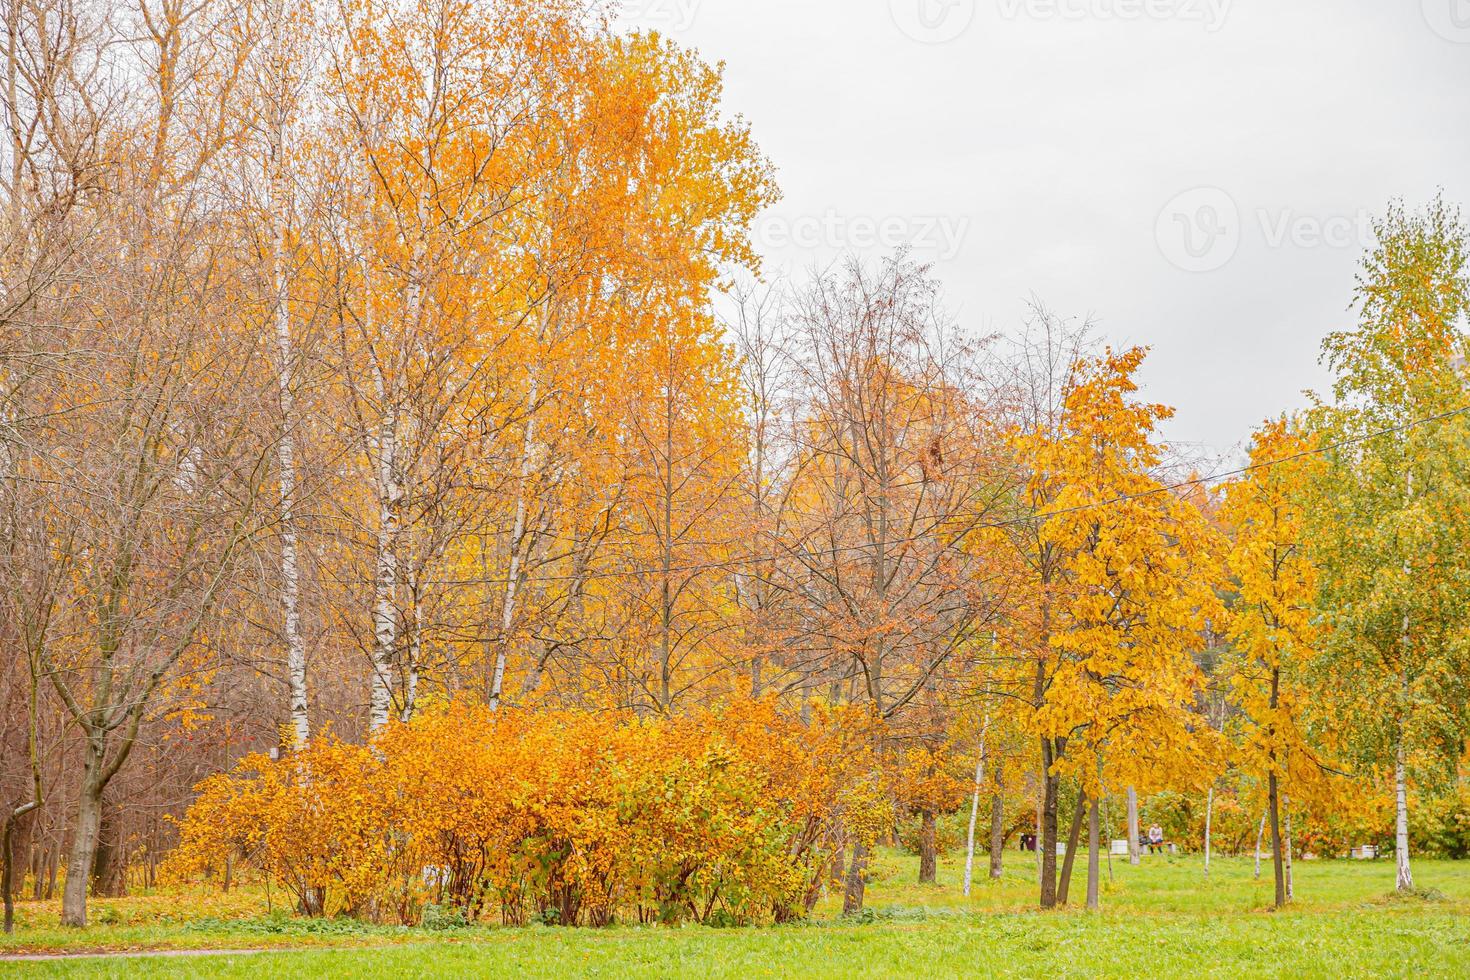 natürlicher Herbstblick auf Bäume mit gelb-orangefarbenem Blatt im Wald oder Park. Bäume mit buntem Laub während der Herbstsaison. inspirierende natur im oktober oder september. wechsel der jahreszeiten konzept. foto